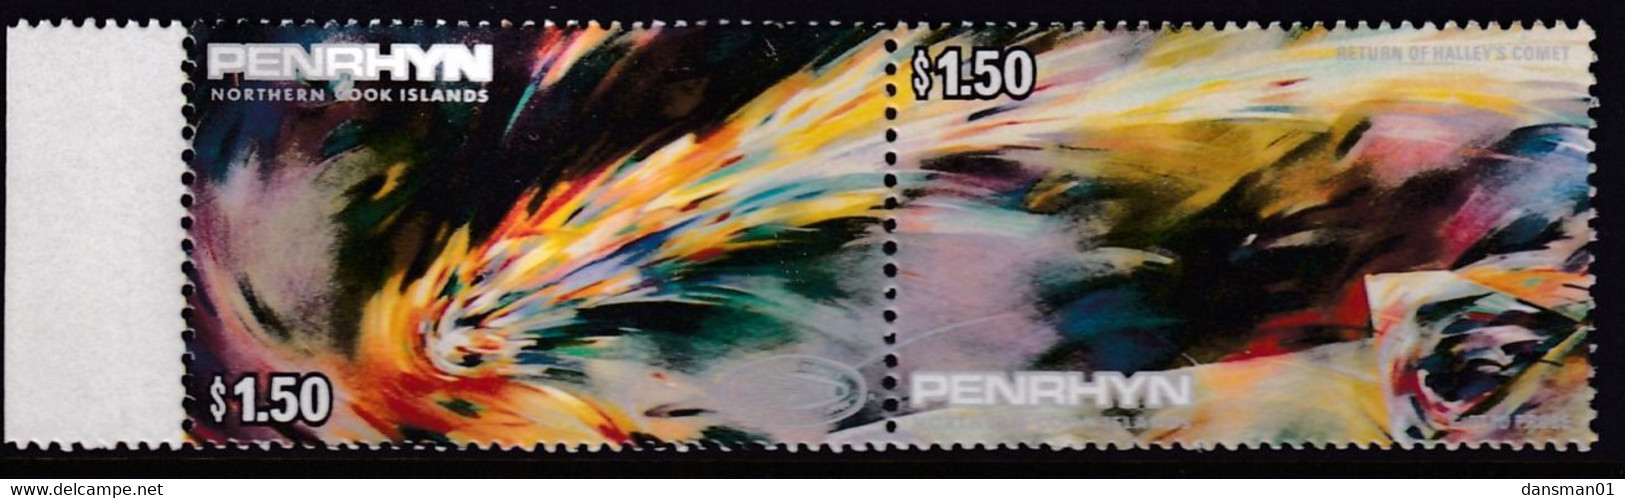 Penrhyn 1986 Haley's Comet Sc 335a Mint Never Hinged - Penrhyn